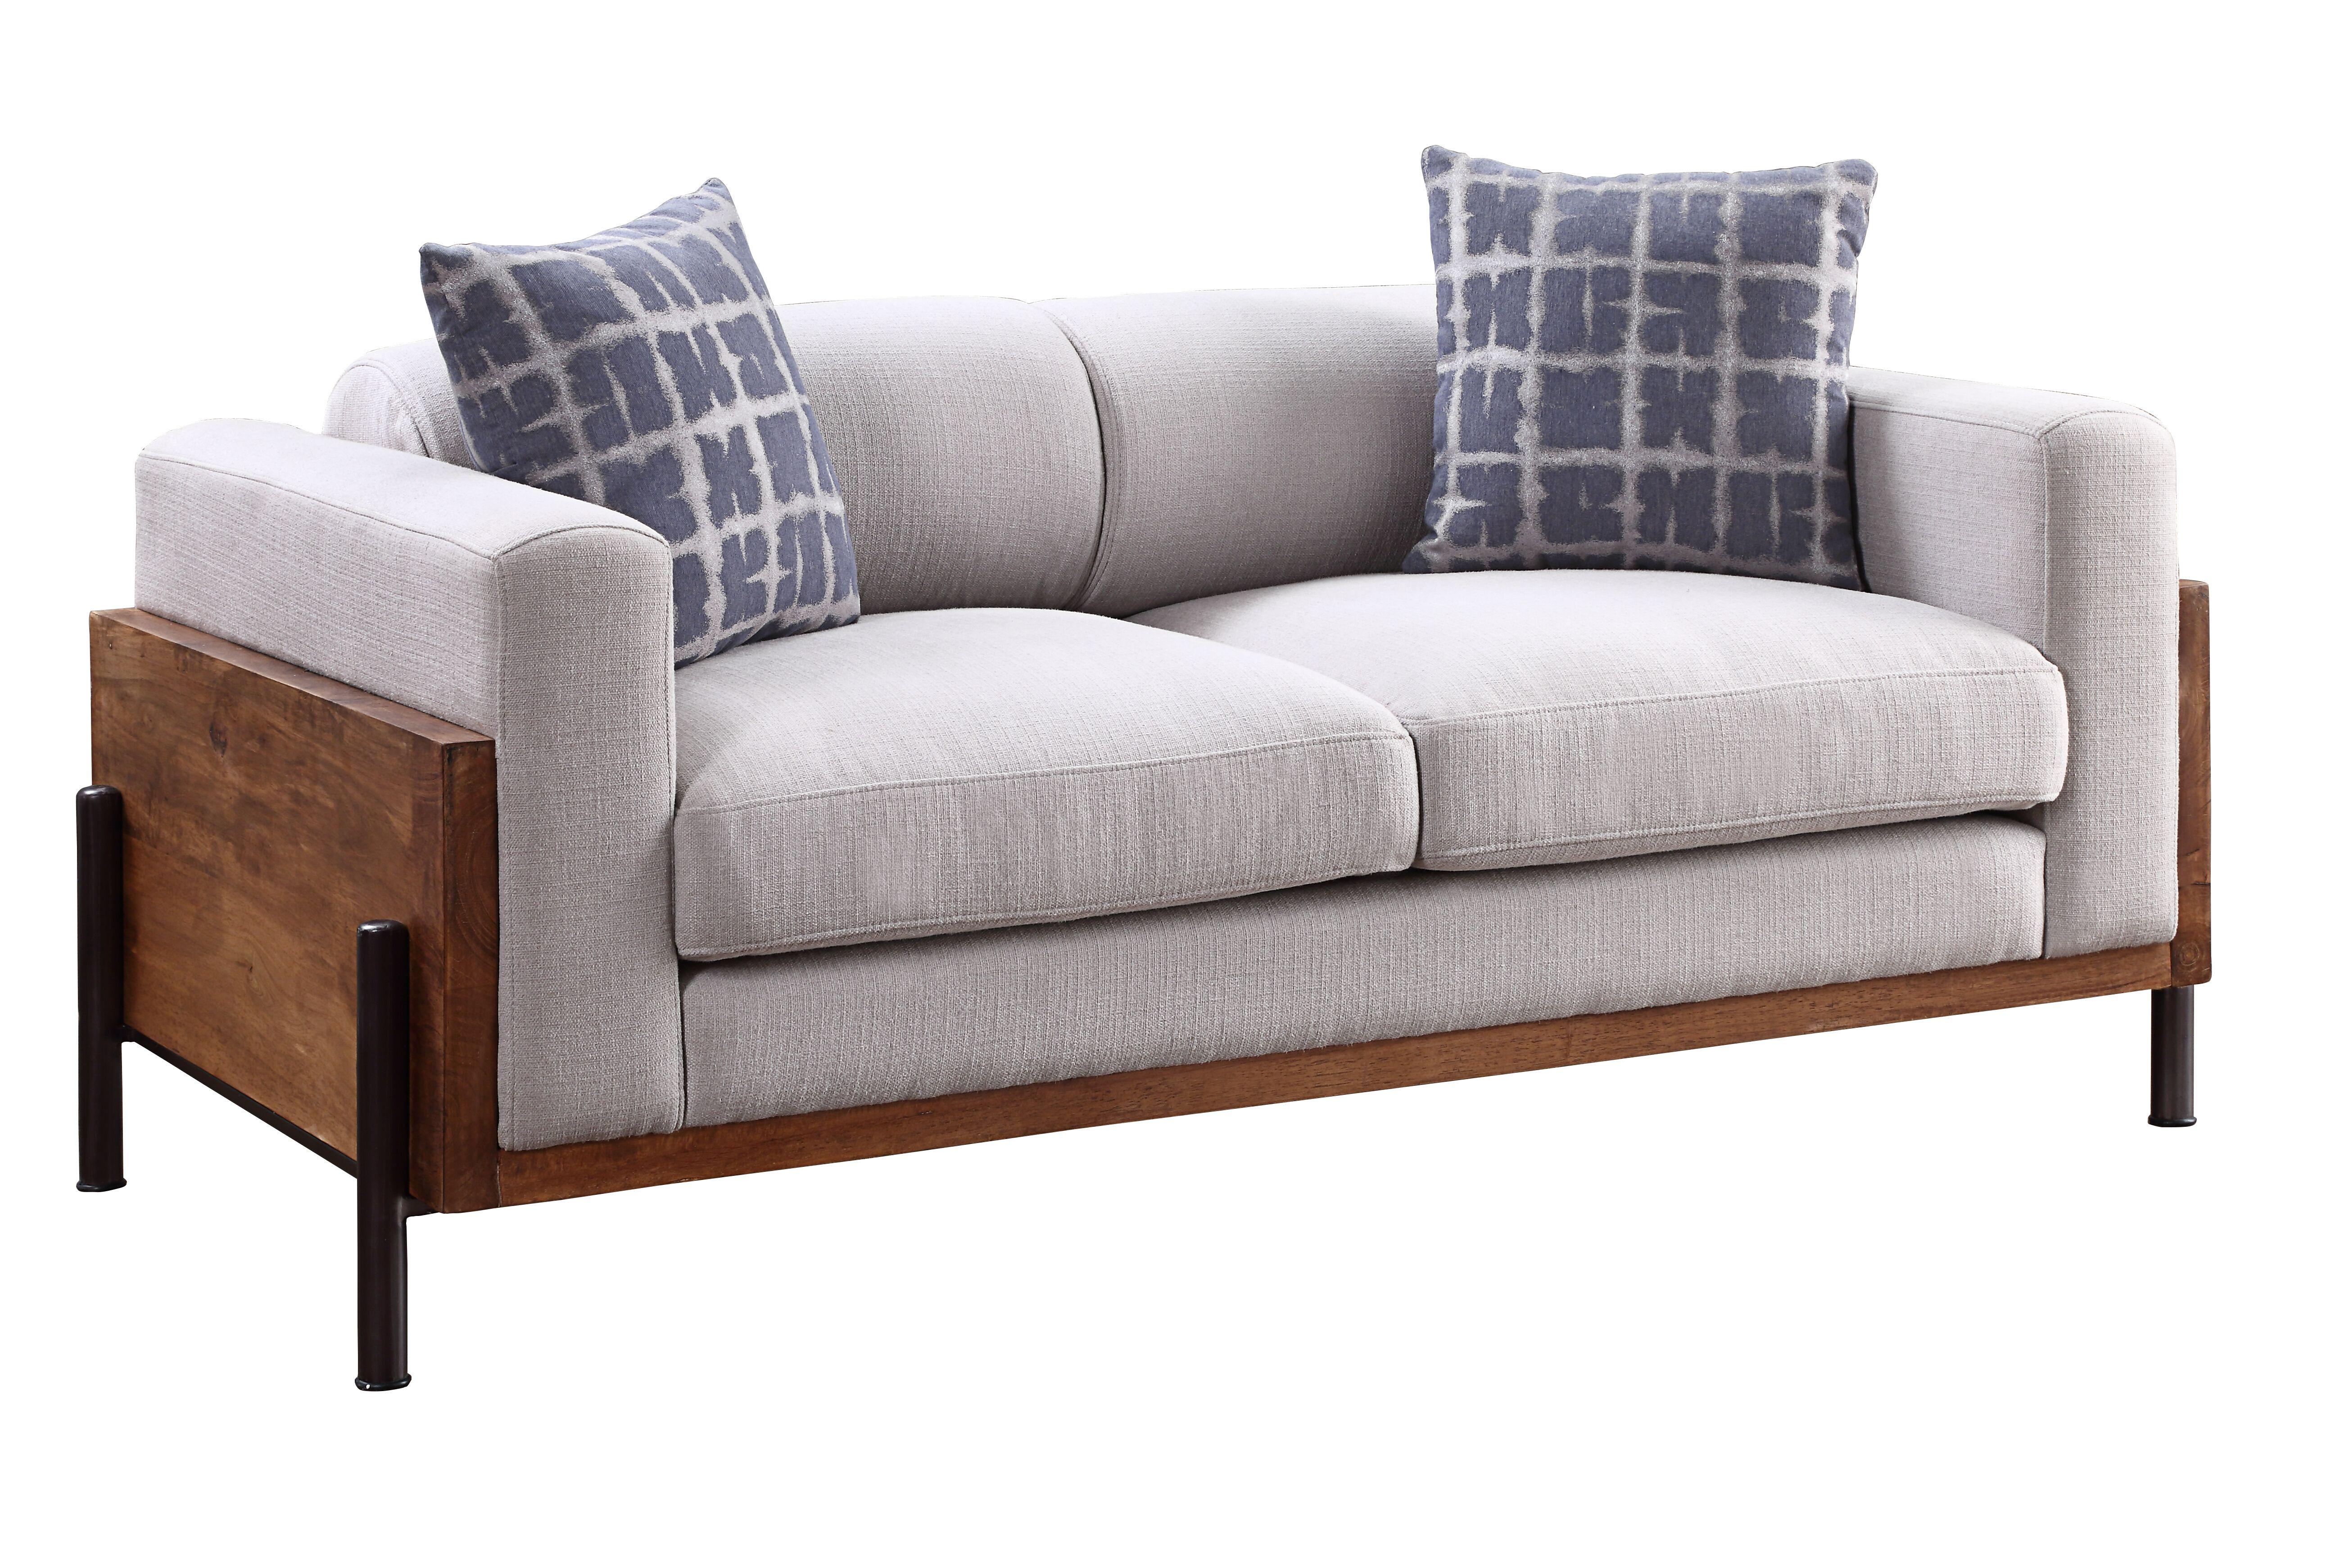 

    
Acme Furniture Pelton Sofa and Loveseat Set Light Gray 54890-2pcs
